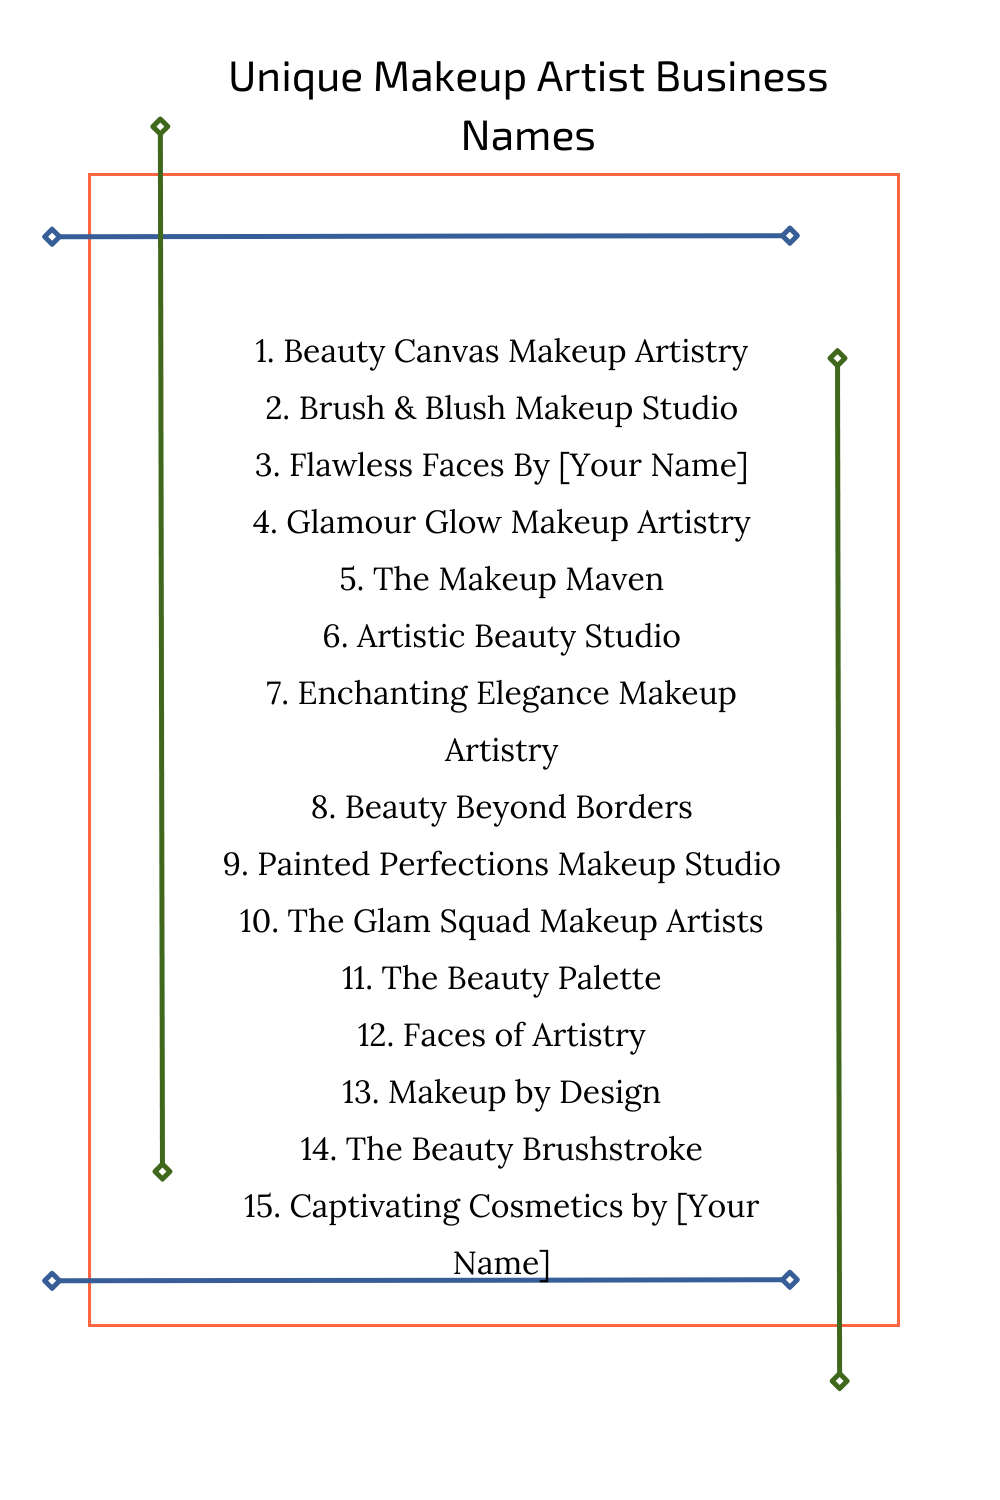 Unique Makeup Artist Business Names